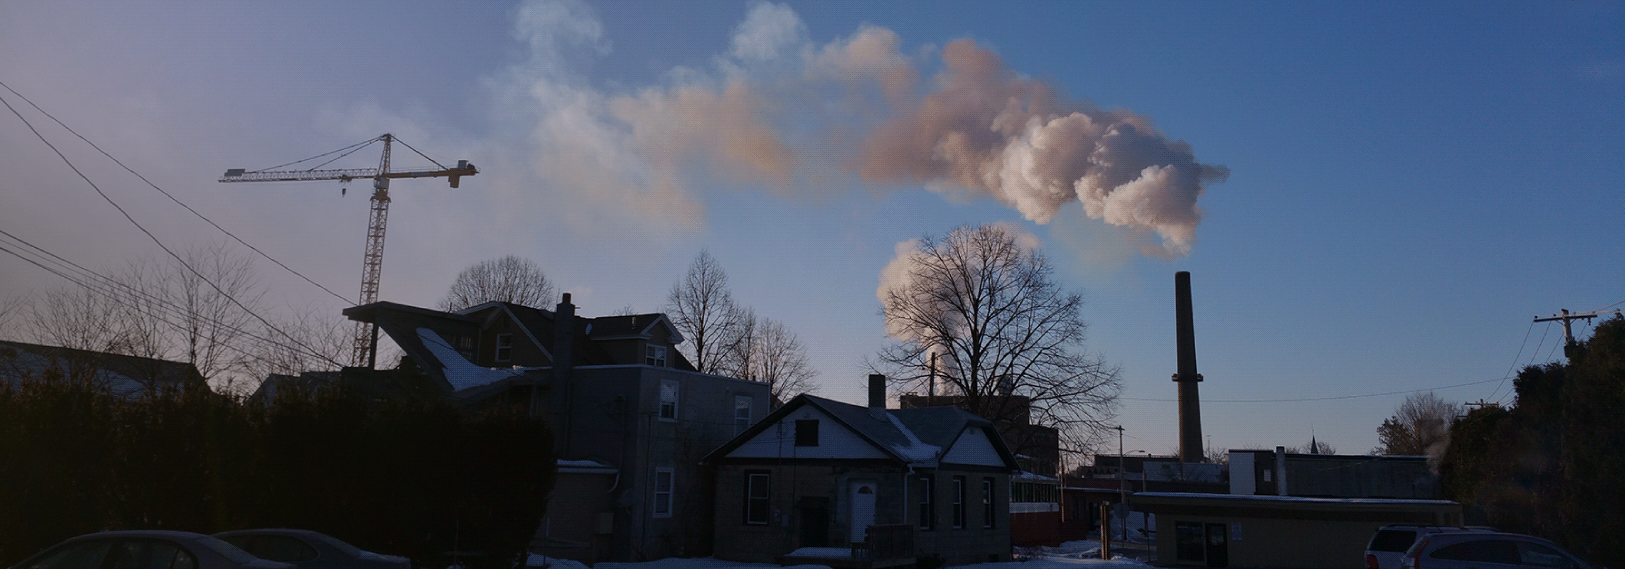 Smoke billows from a smokestack over a suburban neighborhood